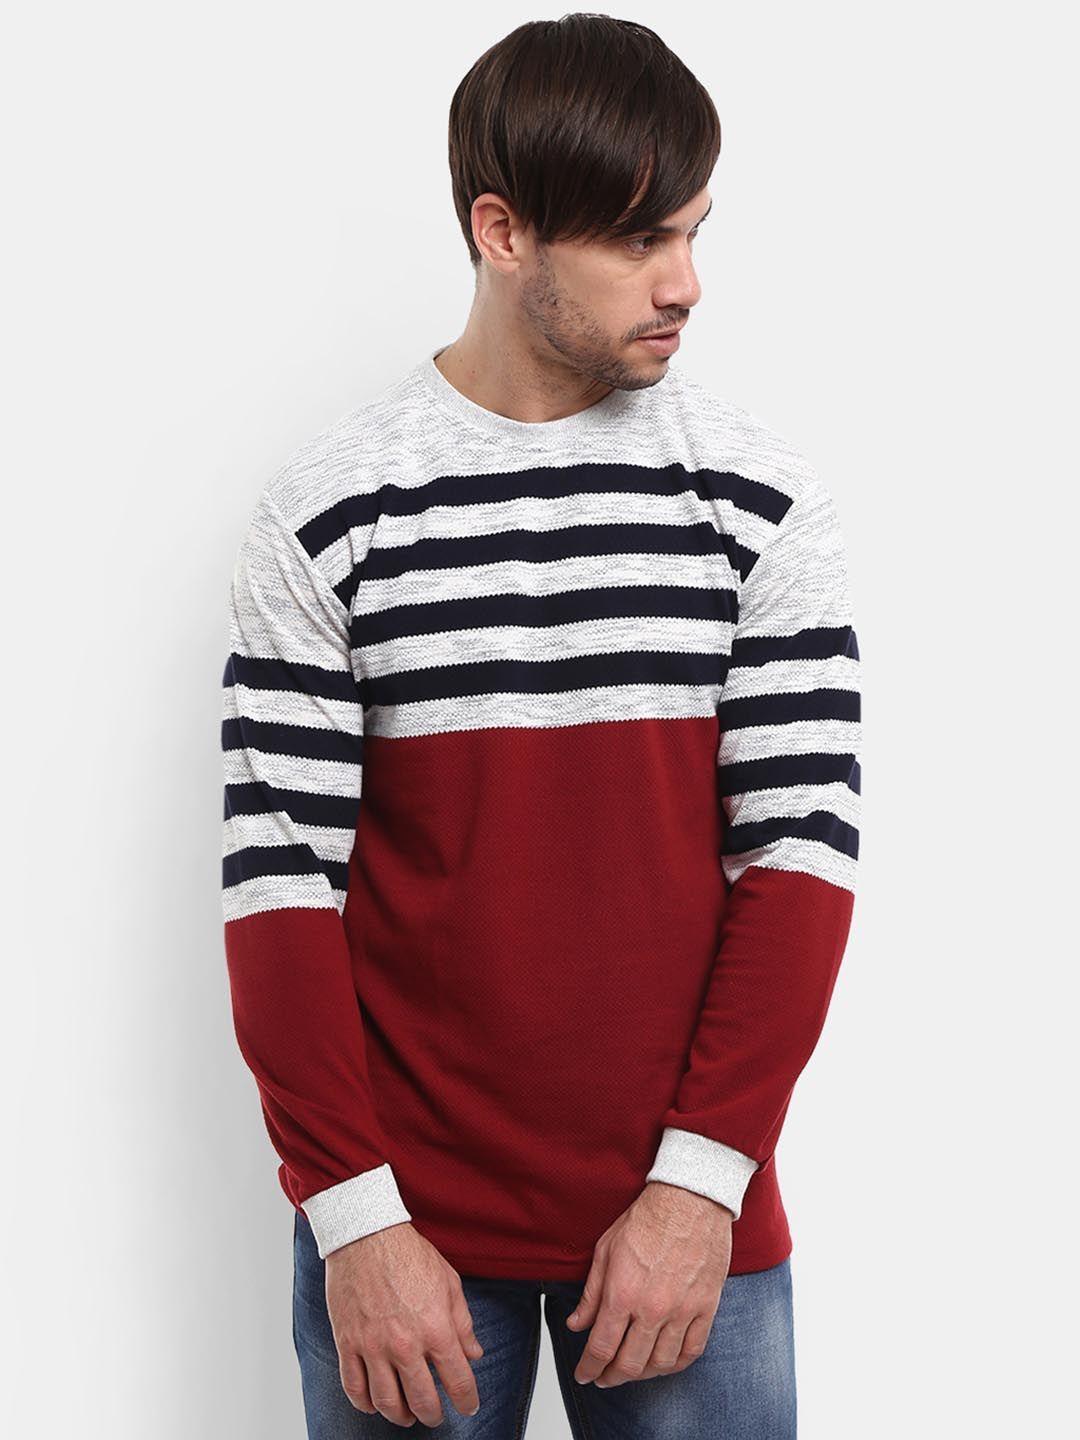 v-mart men maroon striped t-shirt